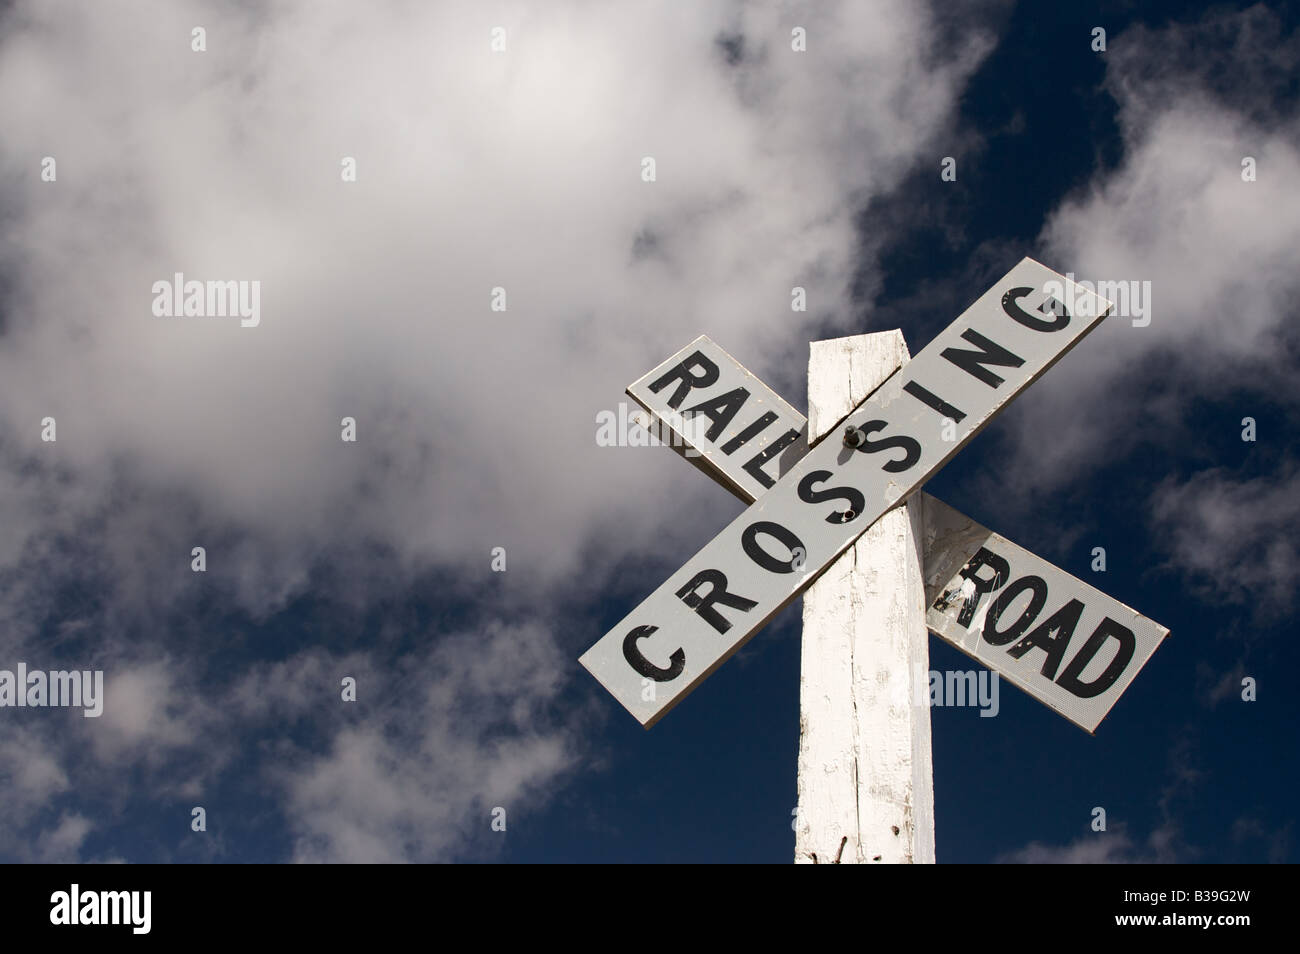 Railroad Crossing Zeichen auf einem weiß getünchten Mast vor einem dunklen blauen Himmel mit Wolken Stockfoto